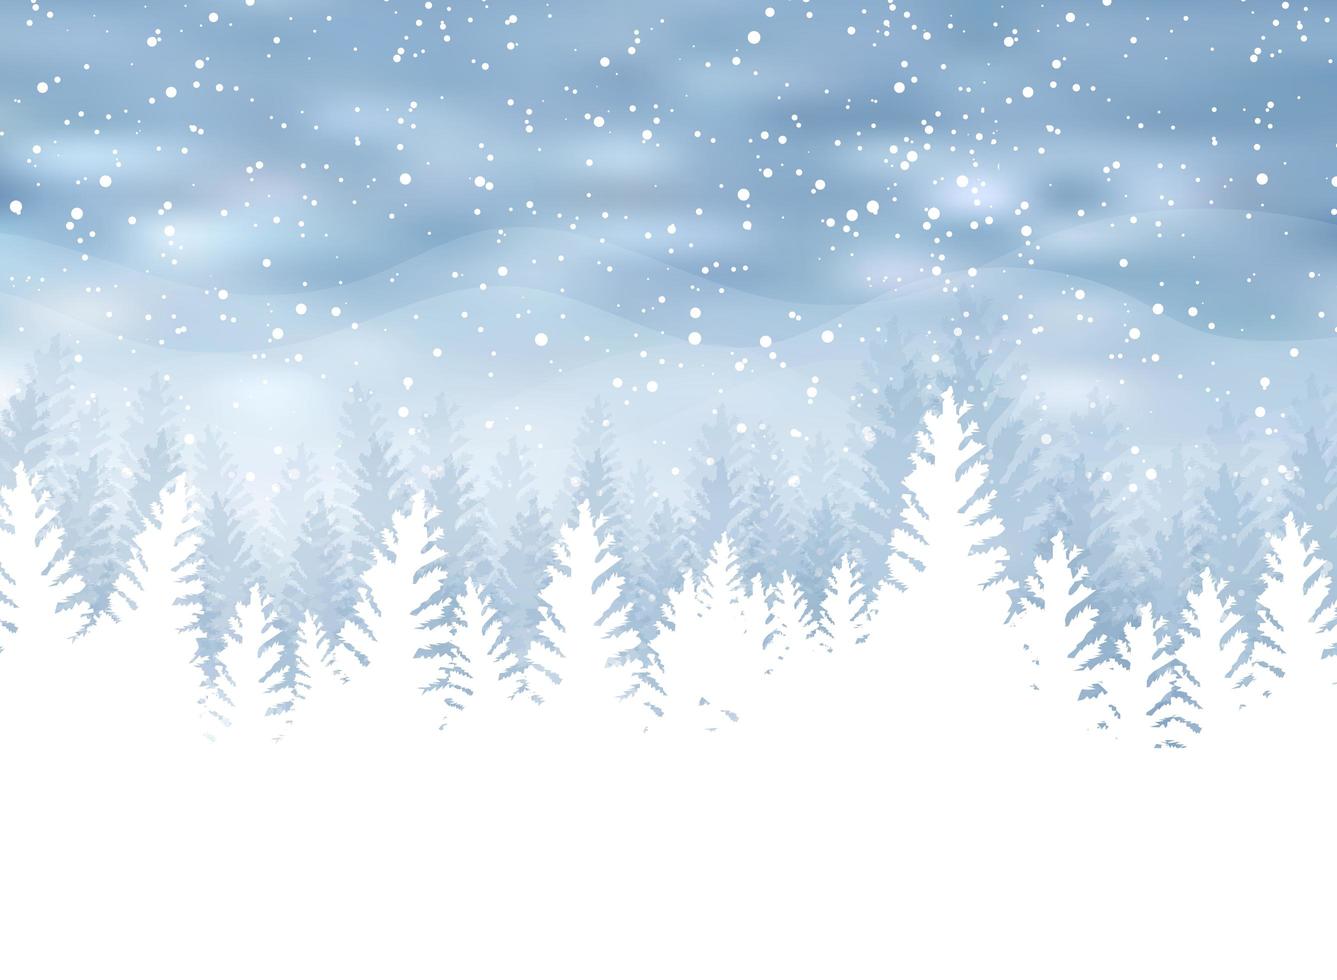 invierno de Navidad sobre fondo azul. nieve blanca con copos de nieve en luz plateada brillante. árbol de Navidad. vector